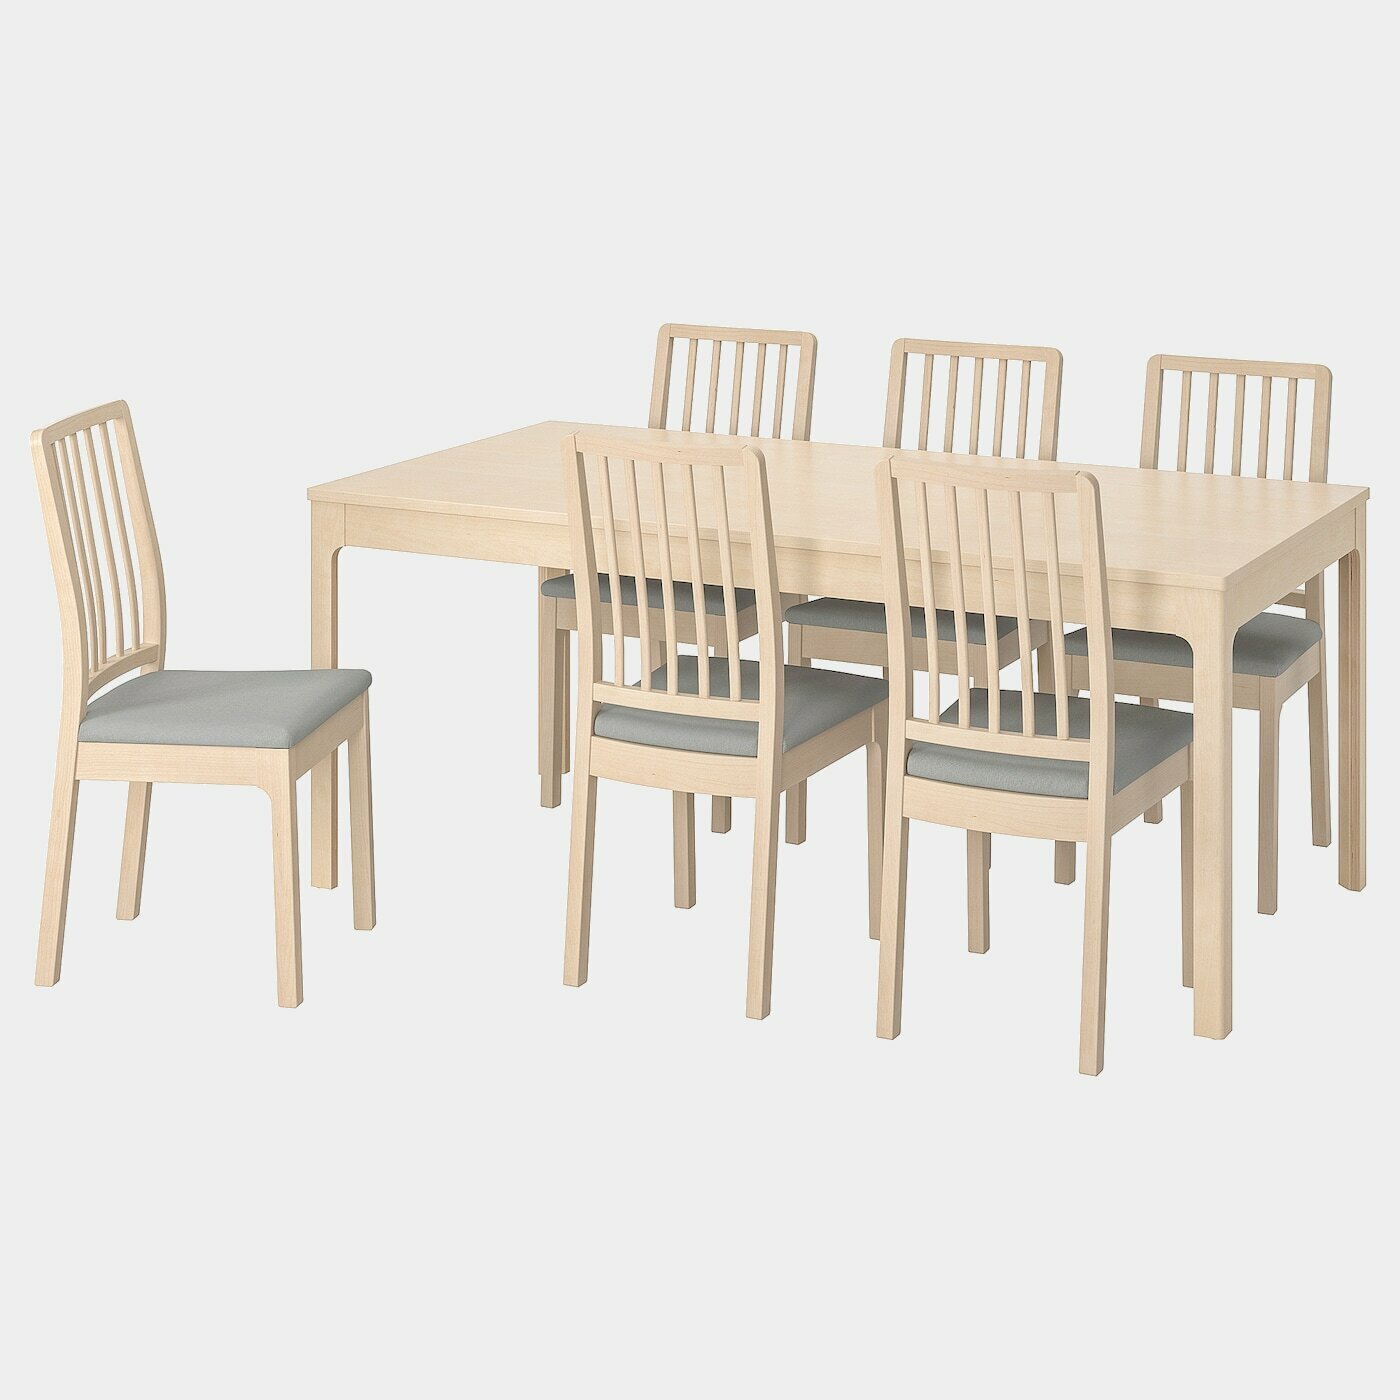 EKEDALEN / EKEDALEN Tisch und 6 Stühle  - Essplatzgruppe - Möbel Ideen für dein Zuhause von Home Trends. Möbel Trends von Social Media Influencer für dein Skandi Zuhause.